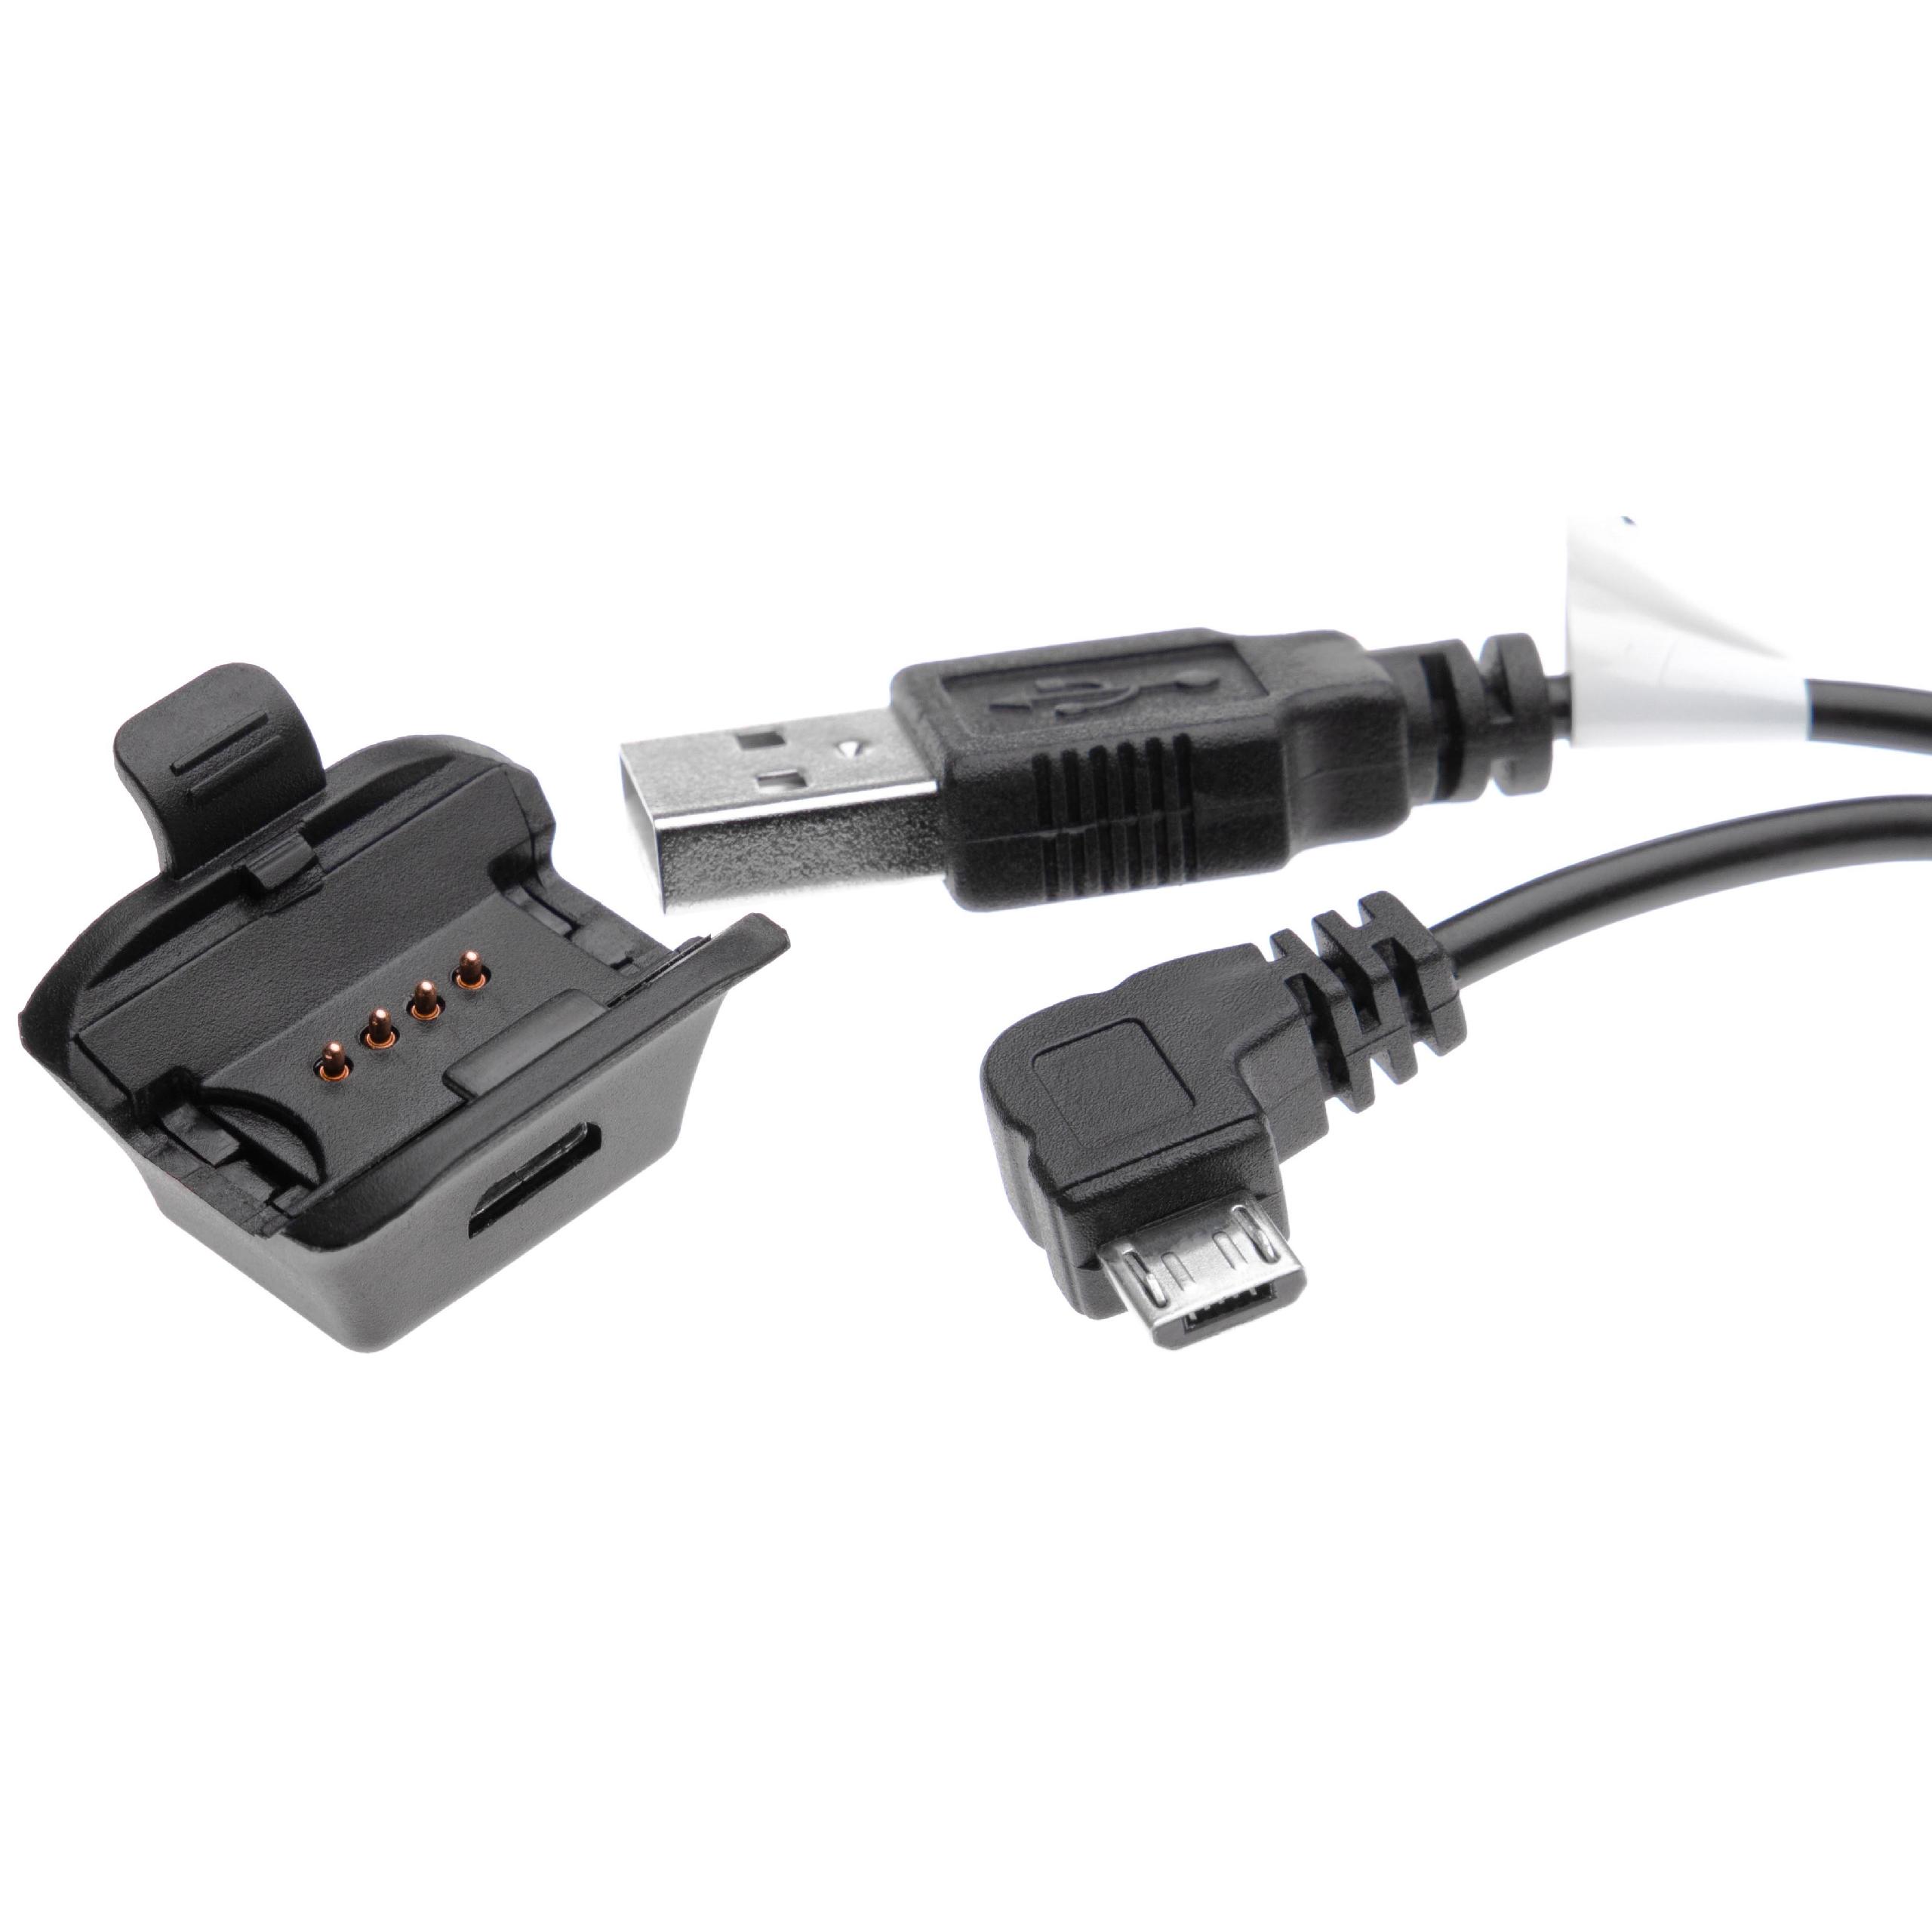 Cable de carga USB para smartwatch Garmin Epix - negro 100 cm